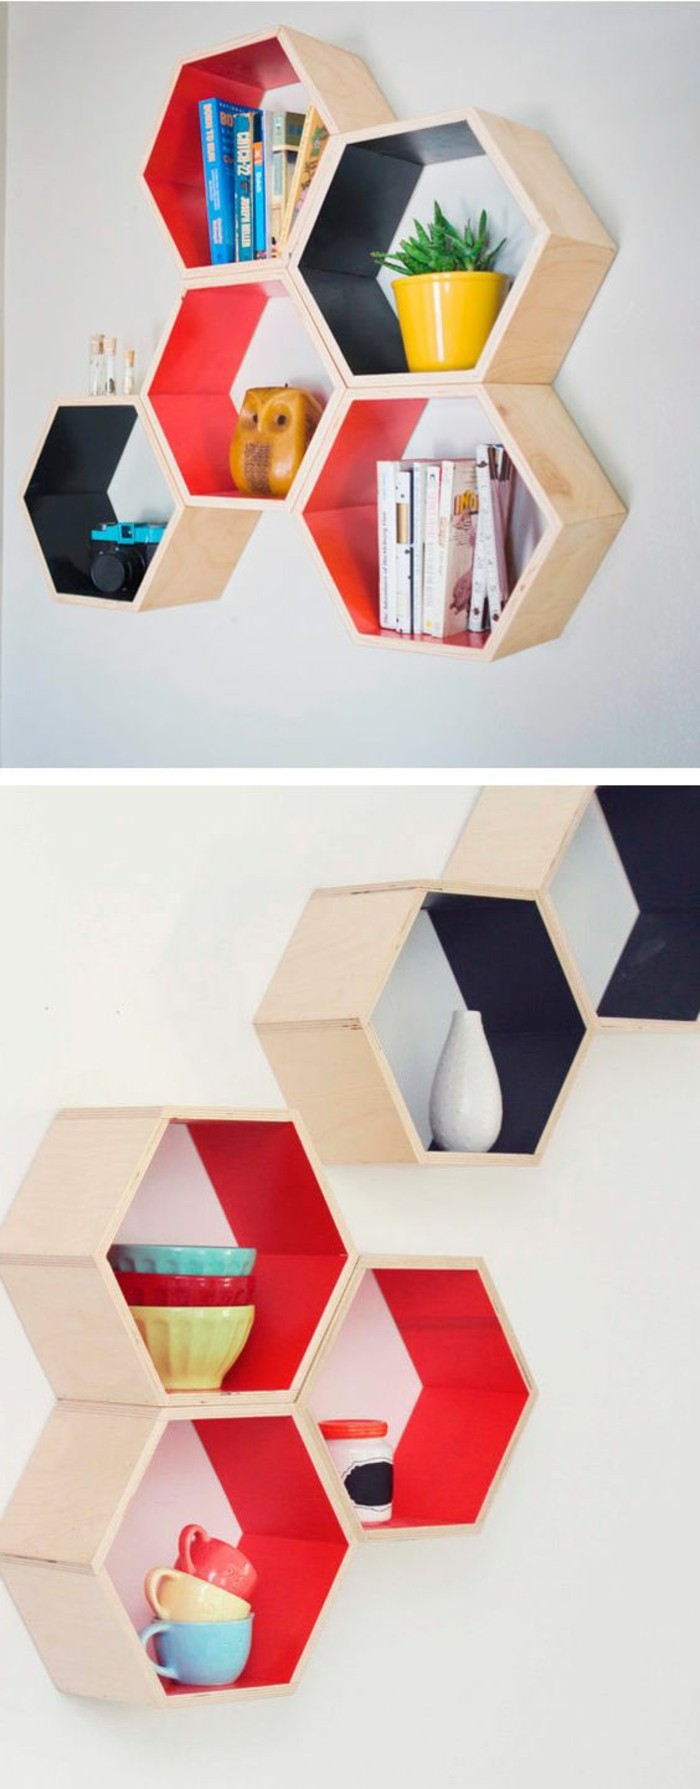 2-bricolaje-moebel-bricolaje-Wohnideen-estantes-de-madera-en-rojo-y-negro color